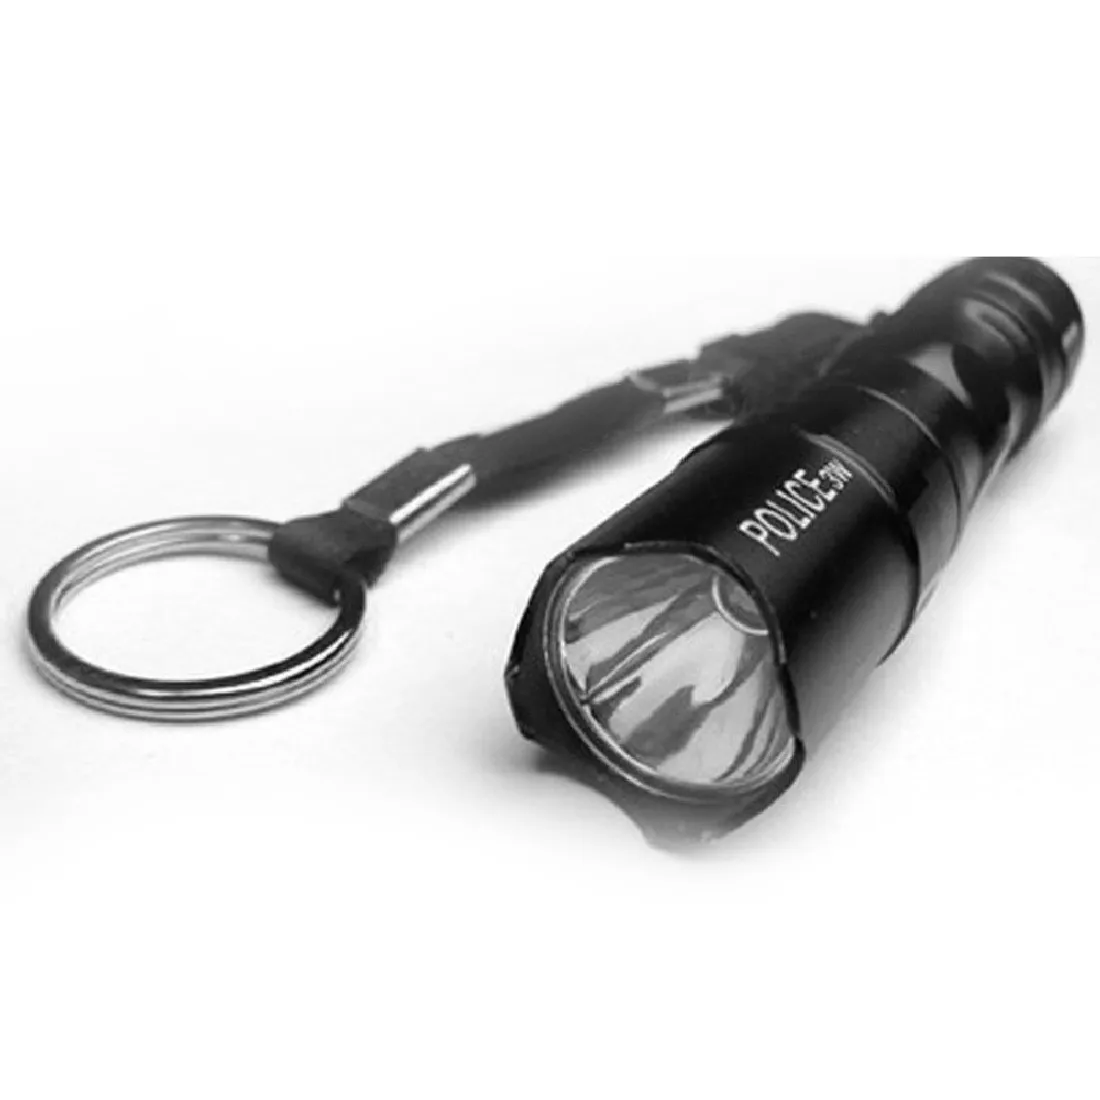 Mini 5W LED Super Bright Flashlight USB Medical Light Small Torch Lamp Keychain